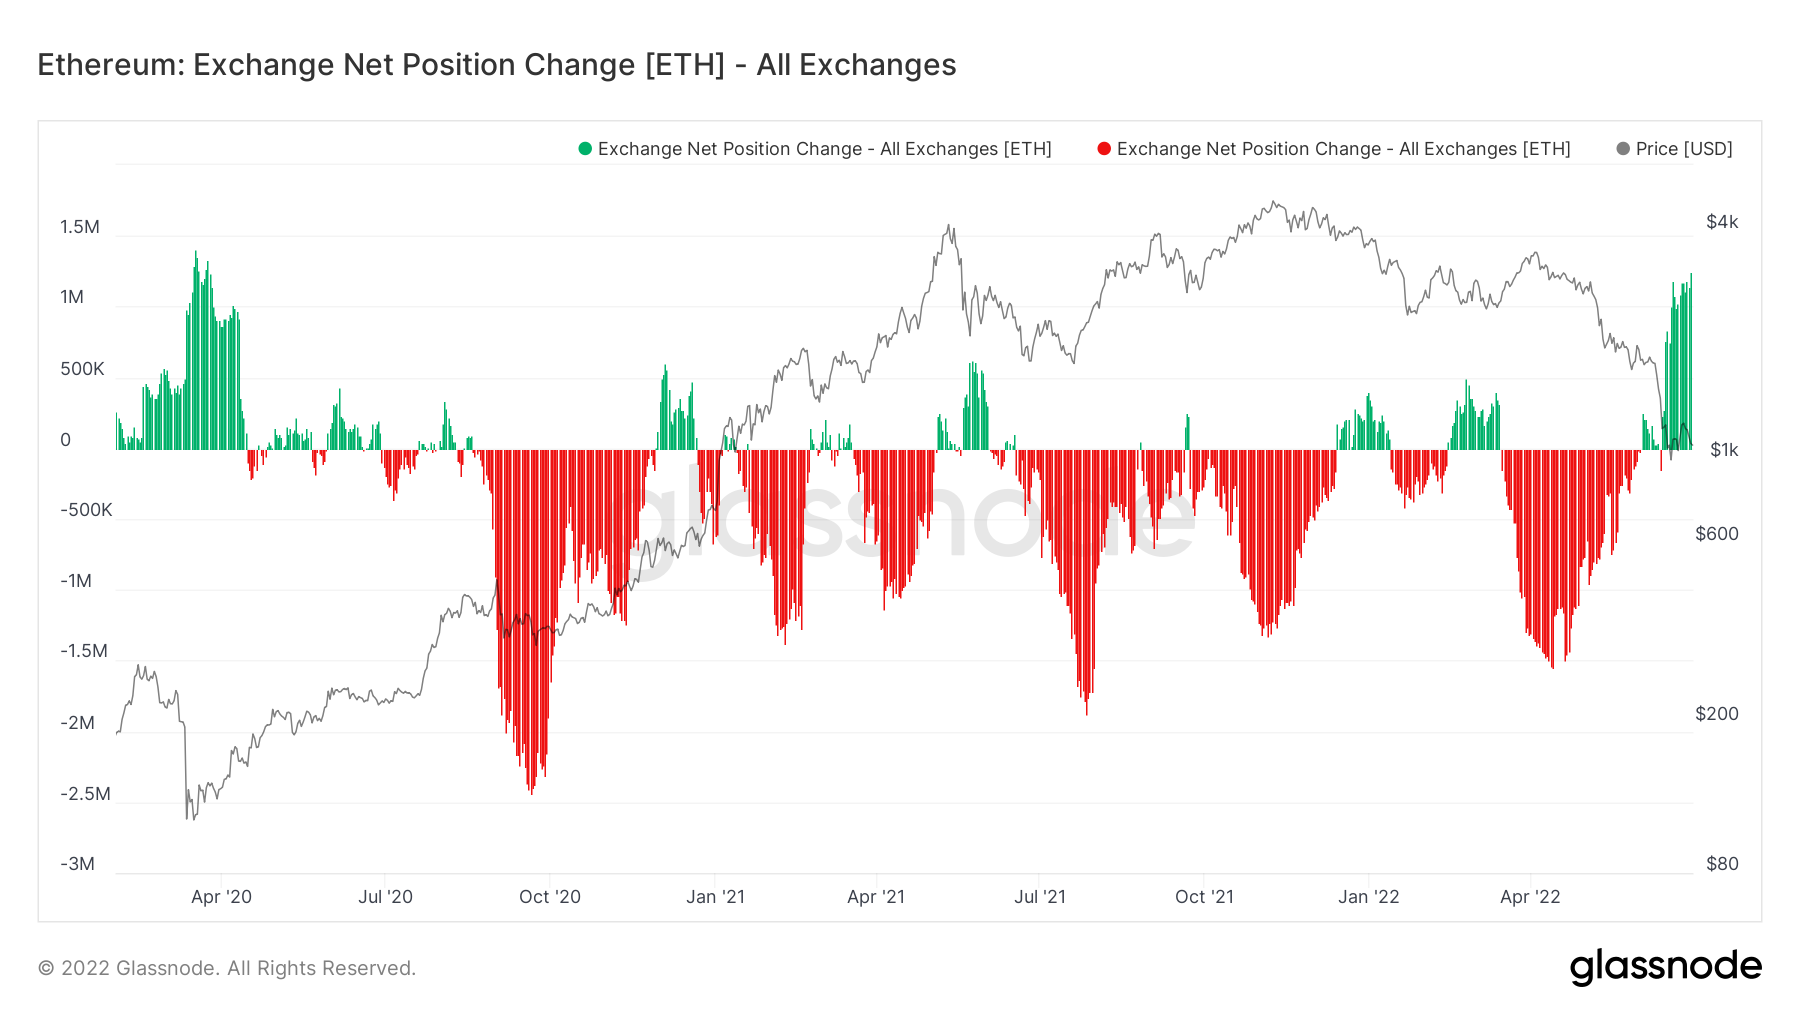 ETH exchange net position change